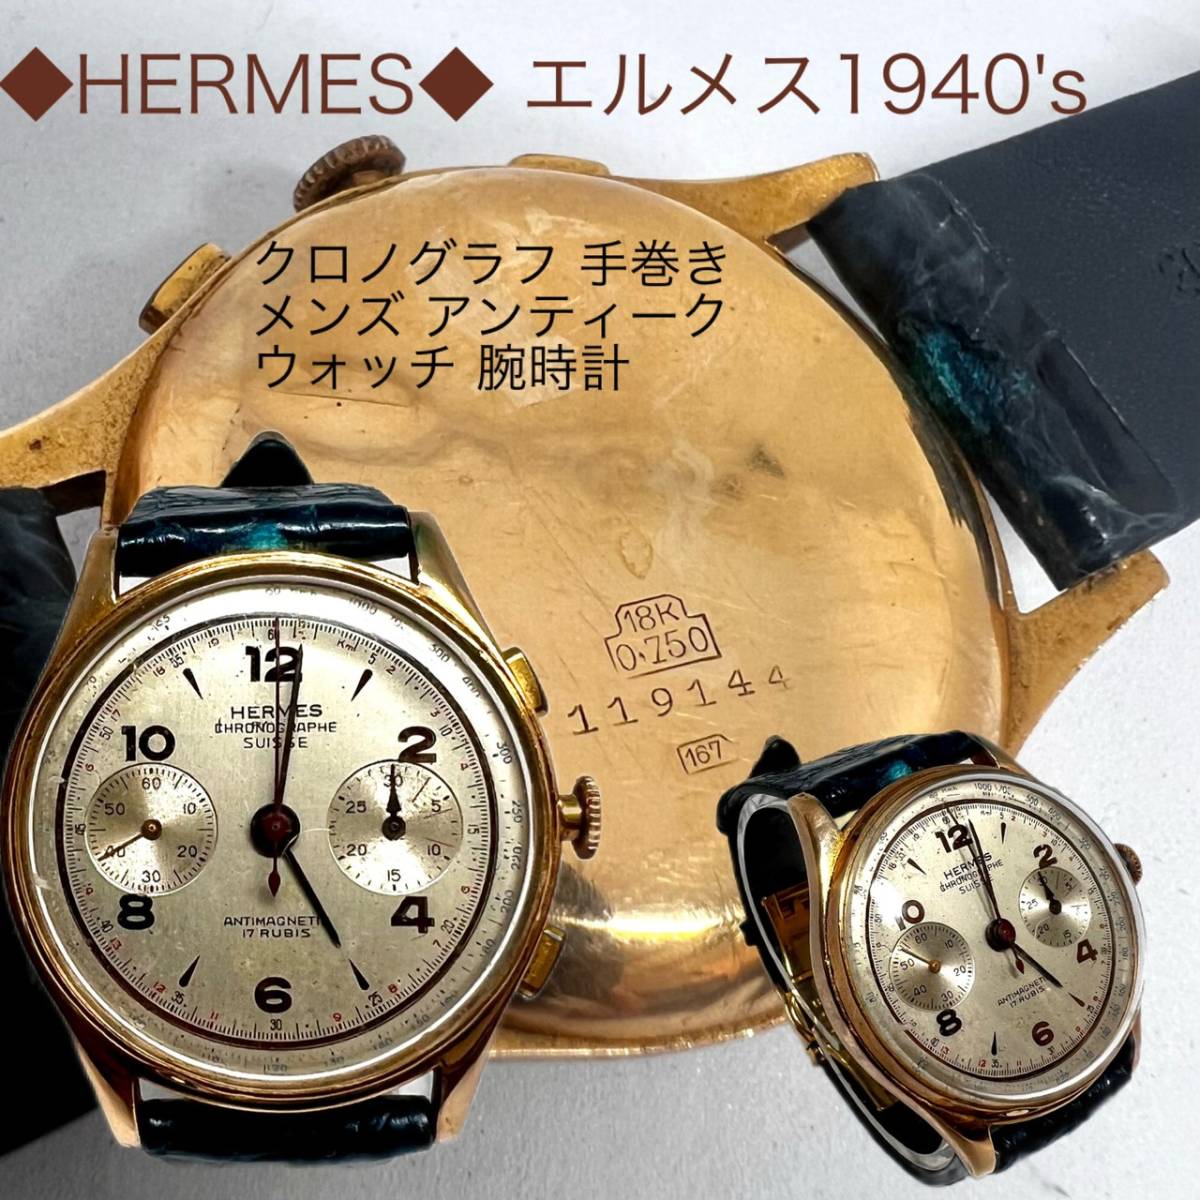 新作ウエア 動作品 【 ZE0614-2-T 】 60サイズ 腕時計 167 119144 金無垢 18K アンティーク 手巻 クロノグラフ CHRONOGRAPHE 1940's エルメス HERMES その他